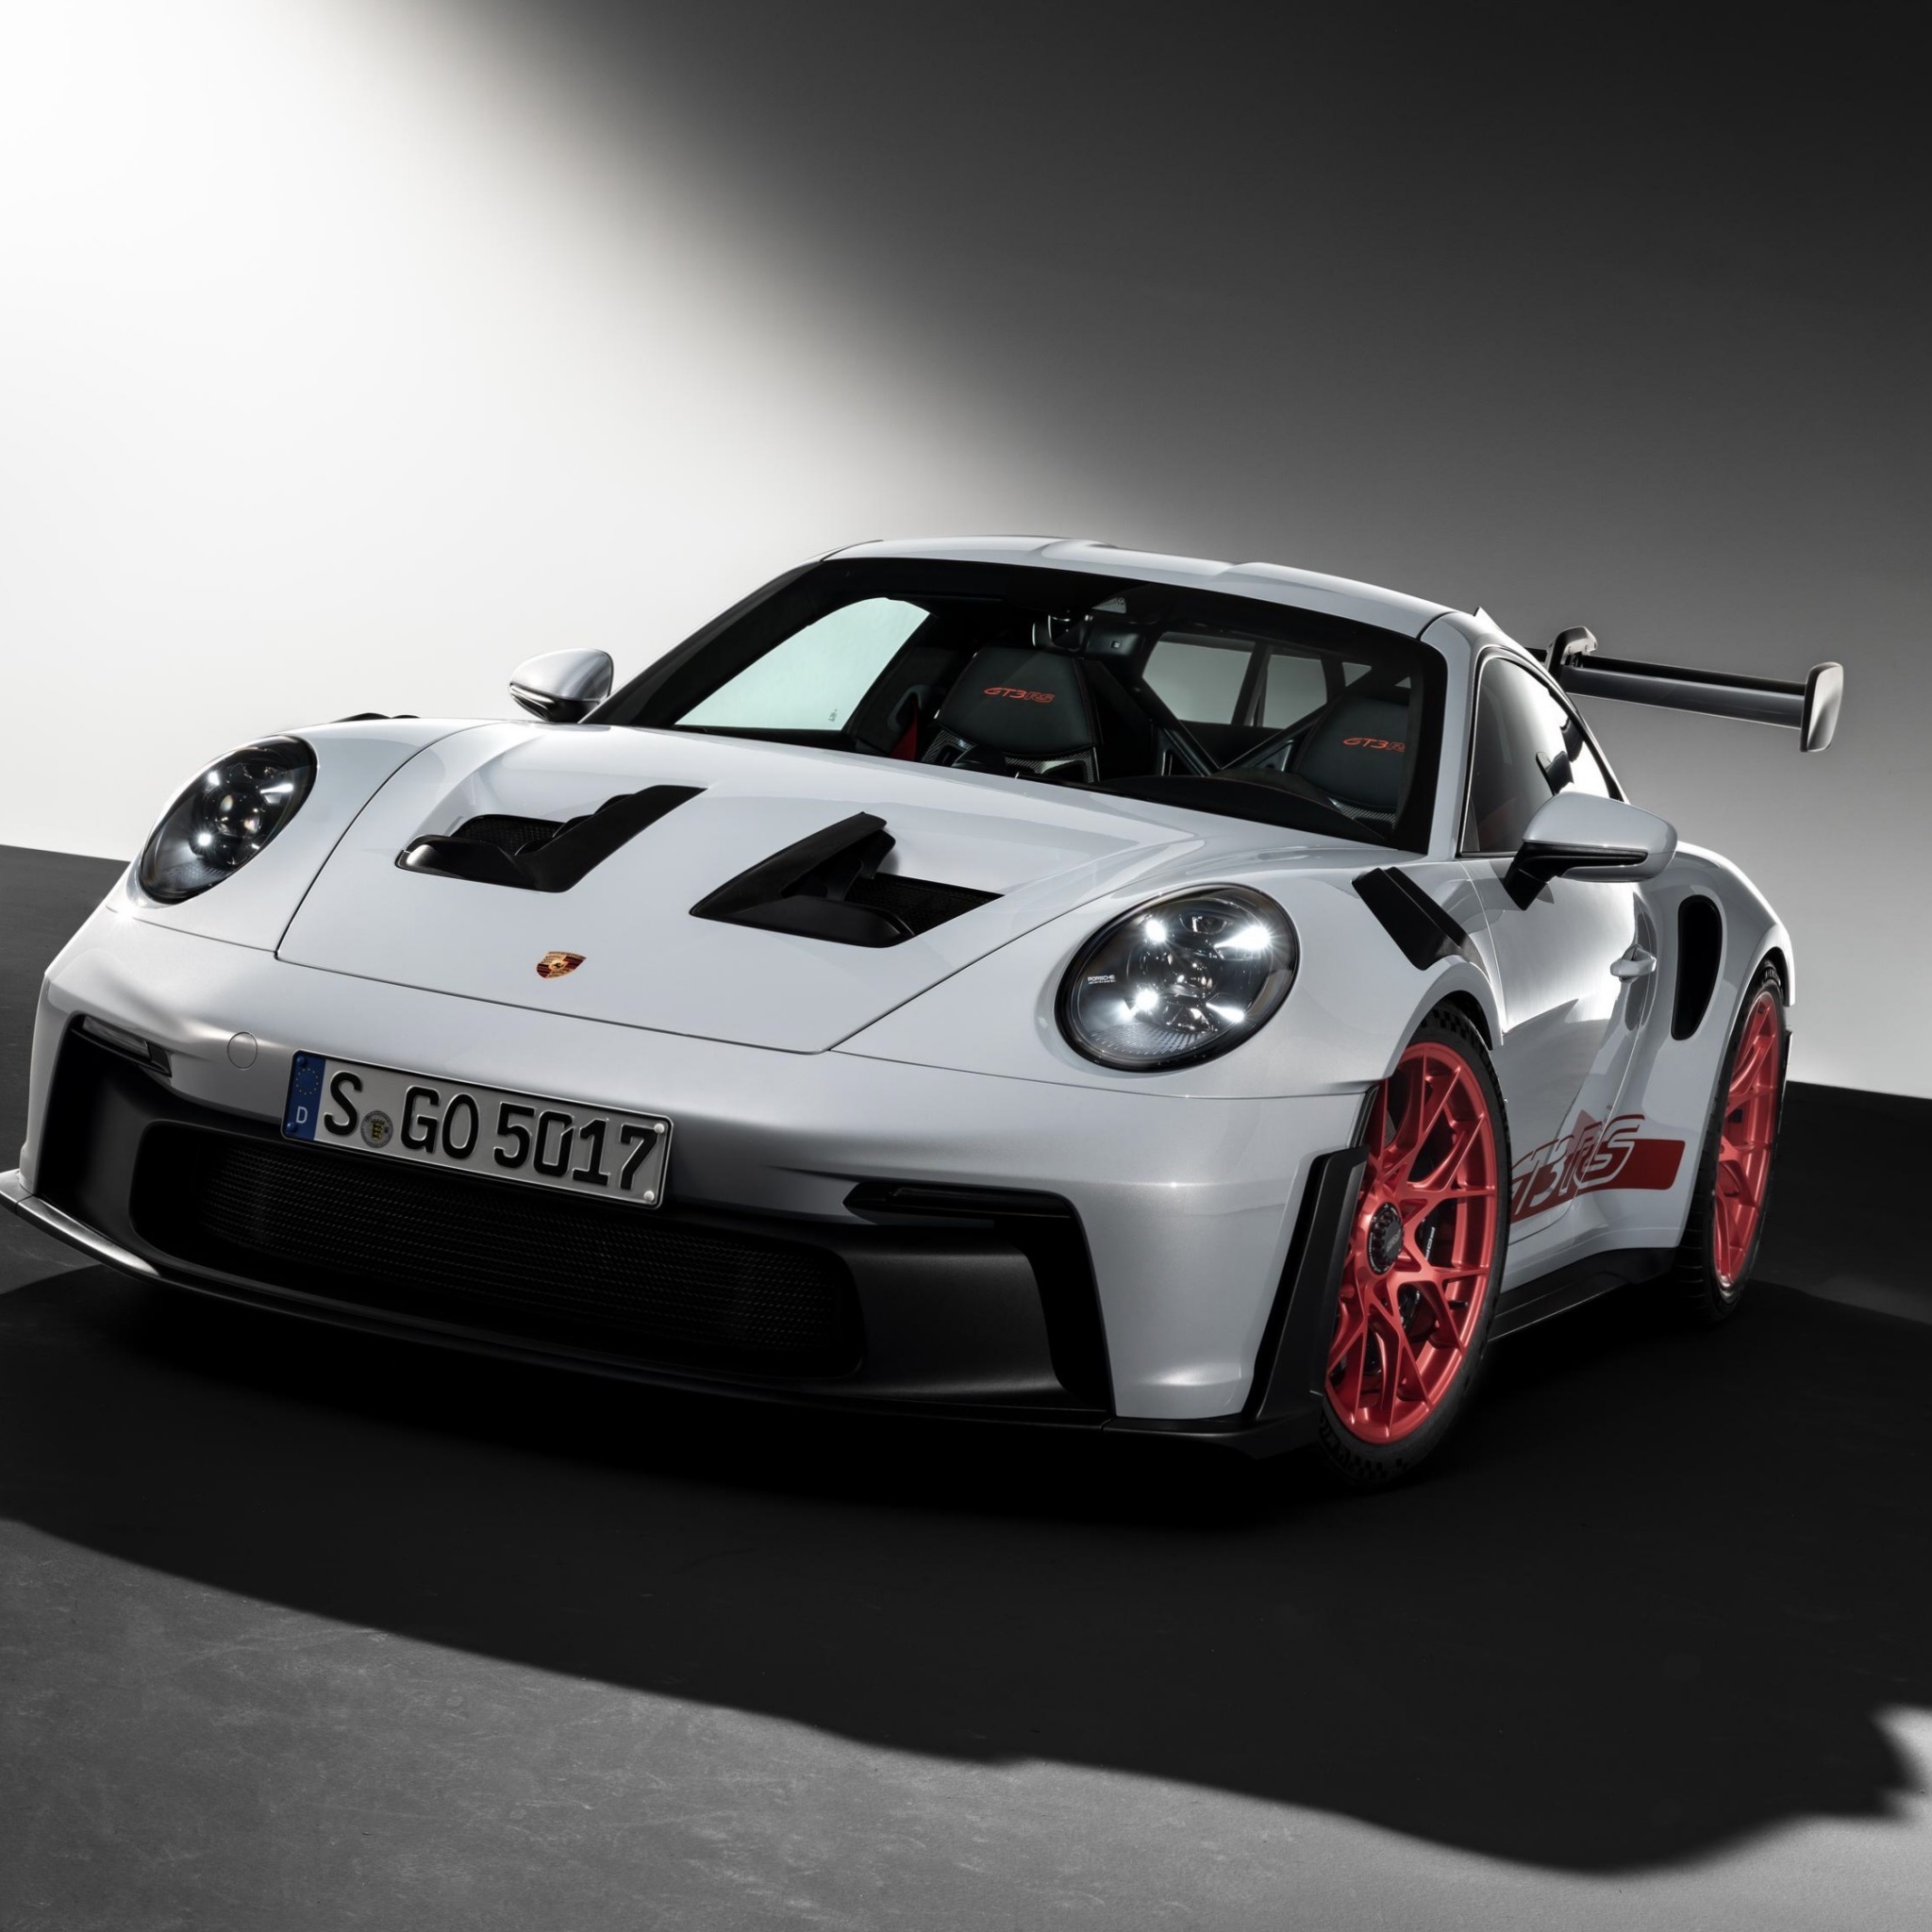 Porsche 911 GT3 RS - Được trang bị động cơ cực mạnh và hệ thống treo vượt trội, chiếc xe thể thao Porsche 911 GT3 RS là niềm tự hào của thương hiệu xe sang danh tiếng. Hãy xem hình ảnh để cảm nhận sự hiệu quả vượt trội của chiếc xe này trên từng cung đường.